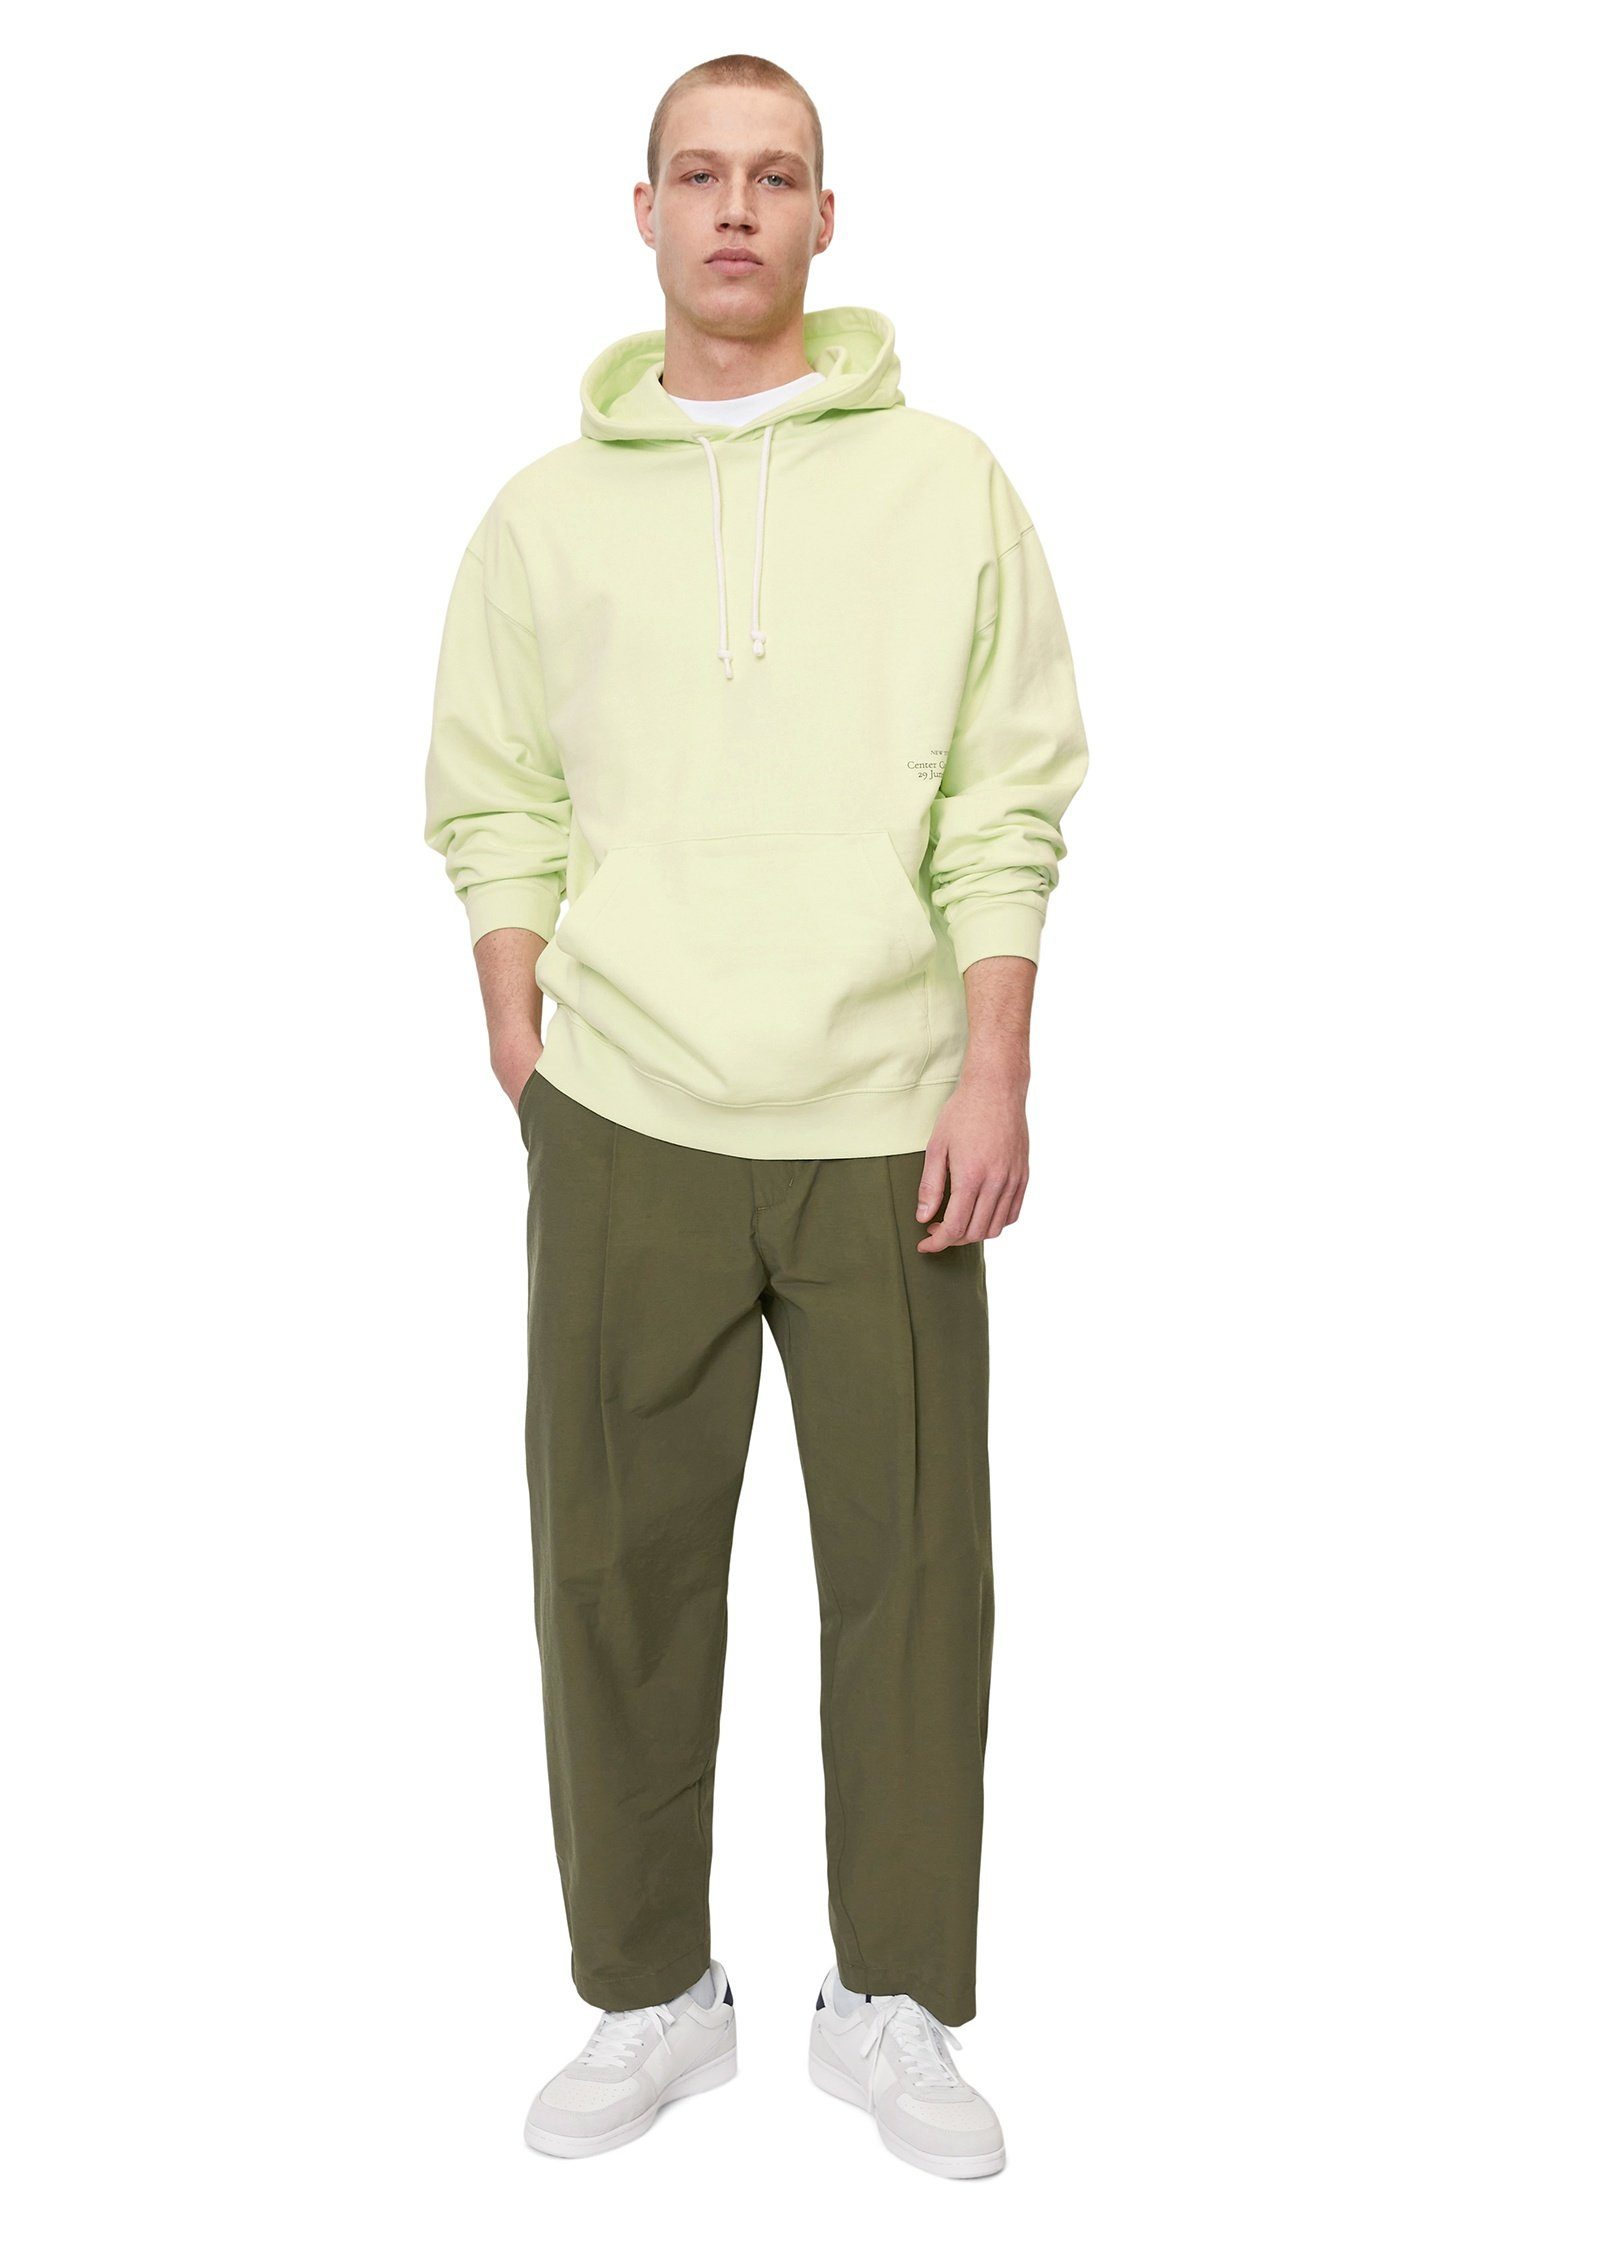 Marc O'Polo reiner Sweatshirt grün Bio-Baumwolle aus DENIM